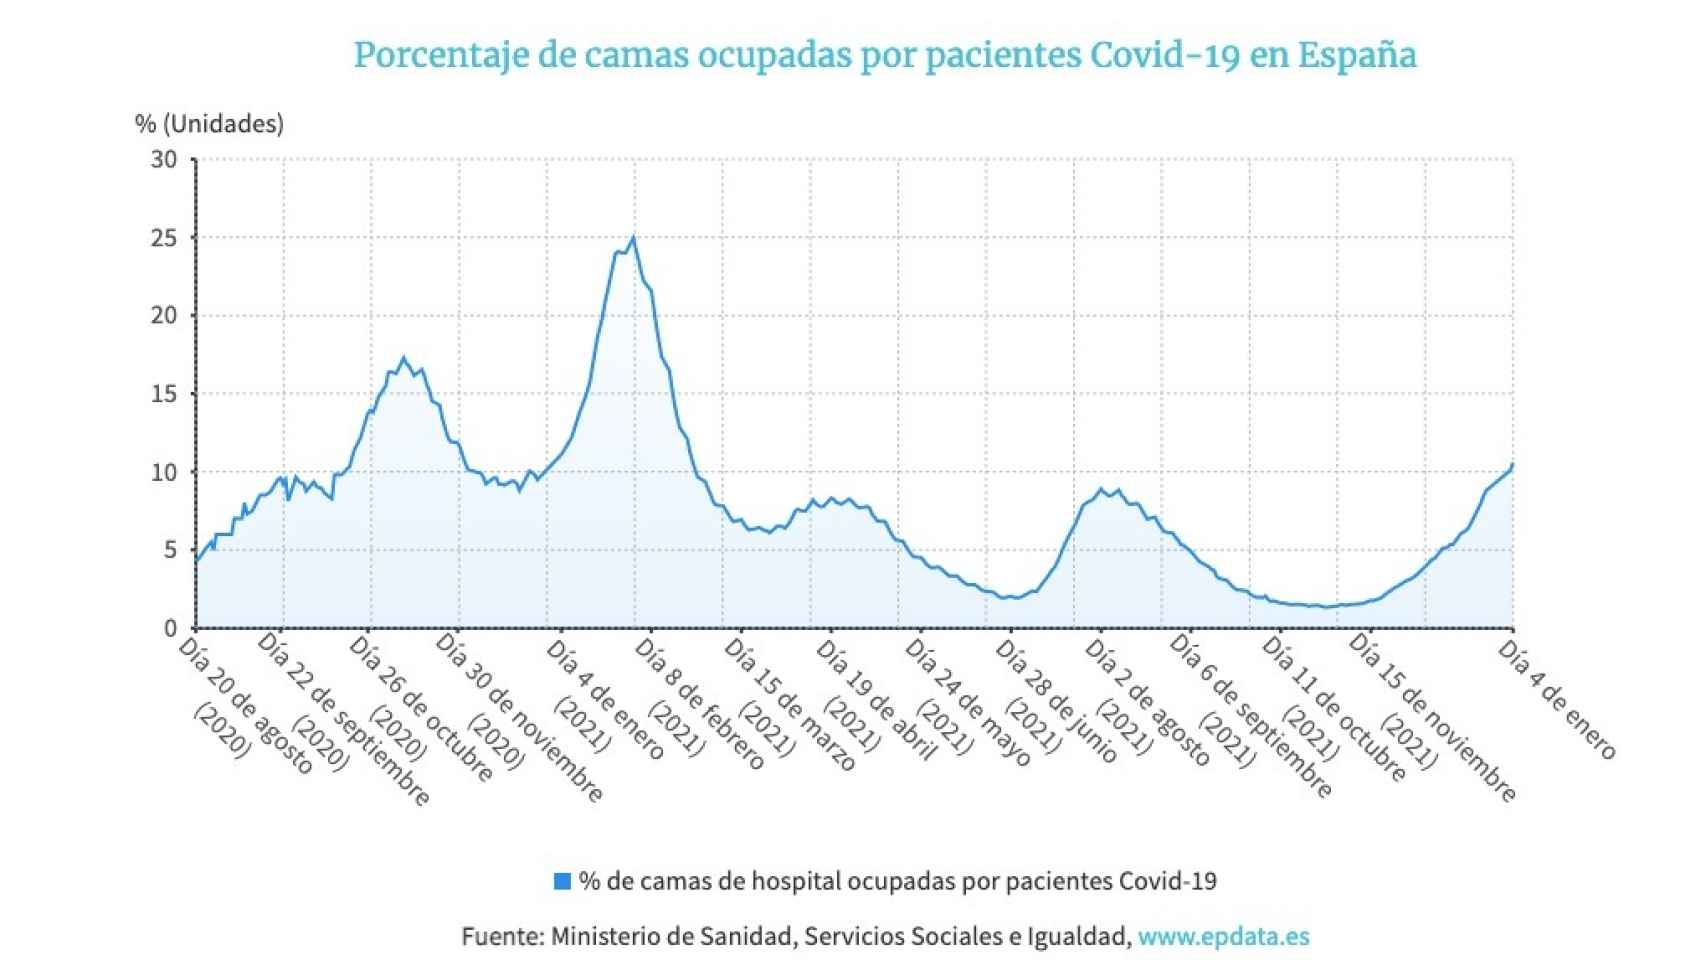 Porcentaje de camas ocupadas con pacientes Covid-19 en España desde que comenzó la pandemia.